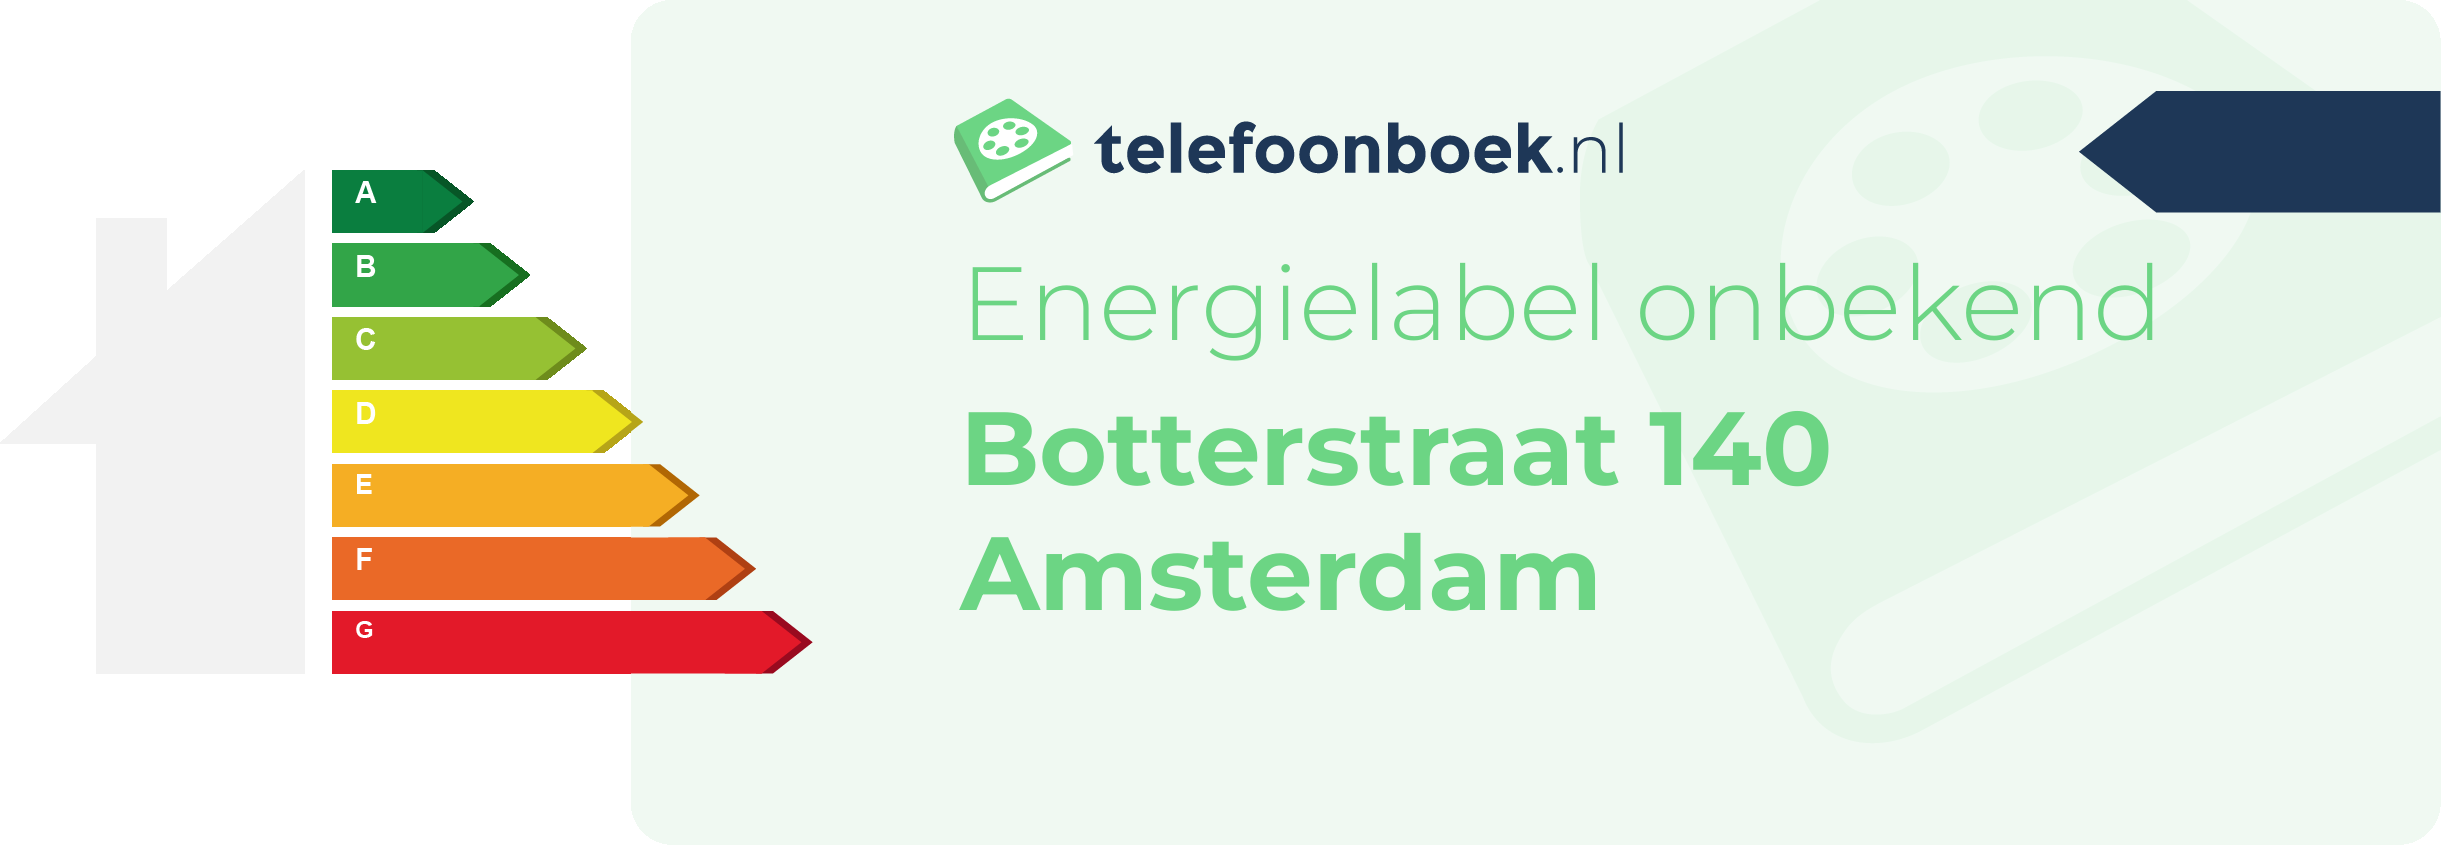 Energielabel Botterstraat 140 Amsterdam